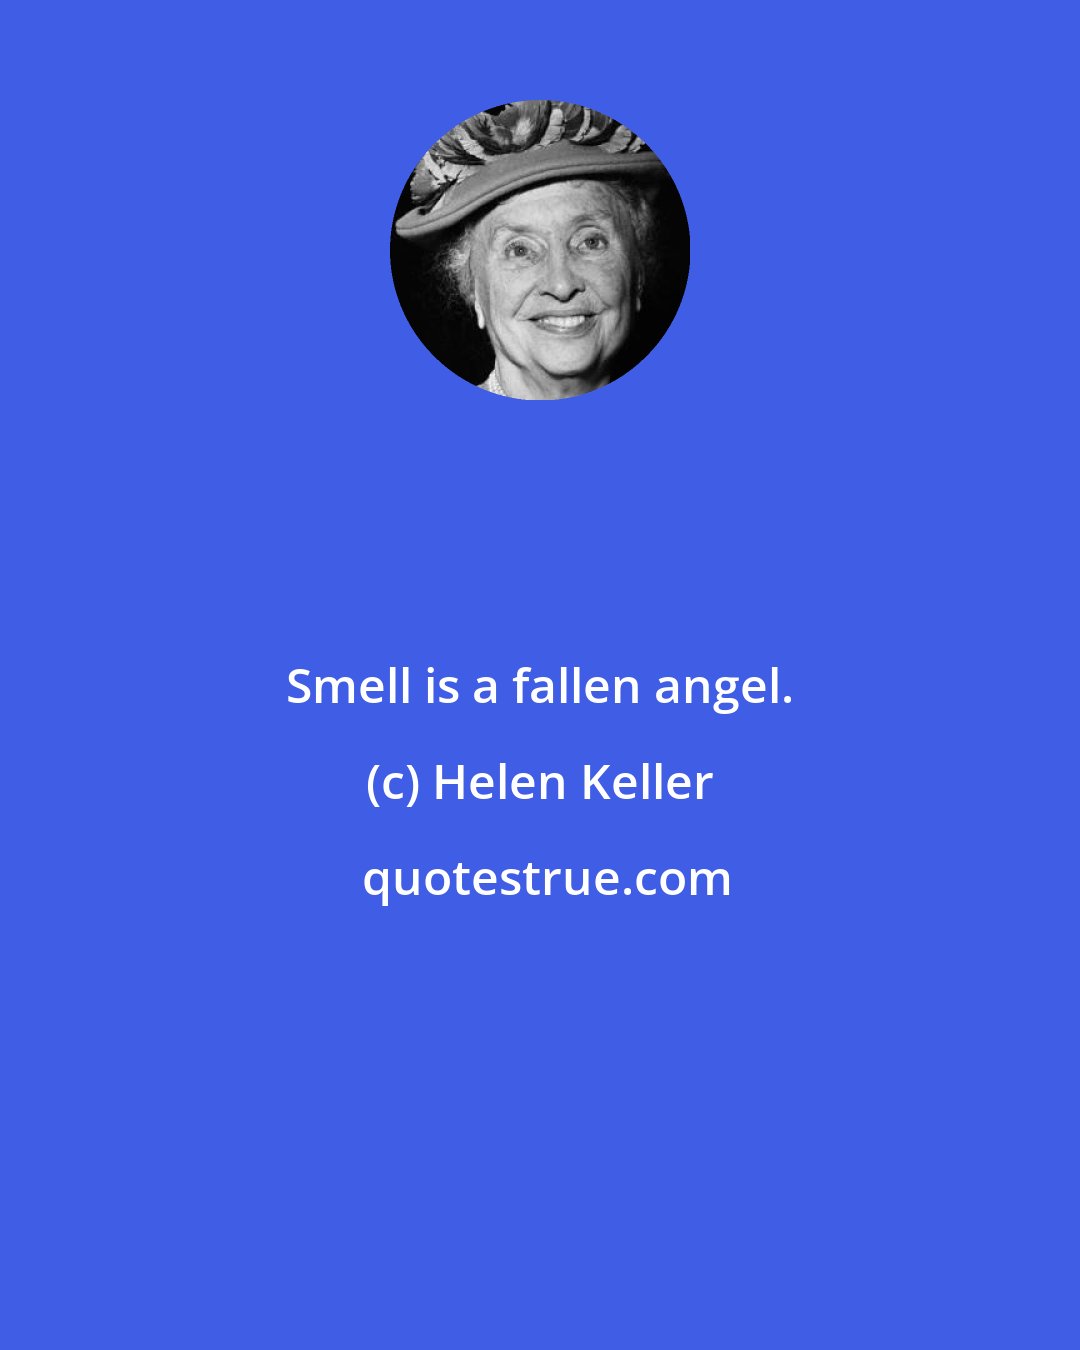 Helen Keller: Smell is a fallen angel.